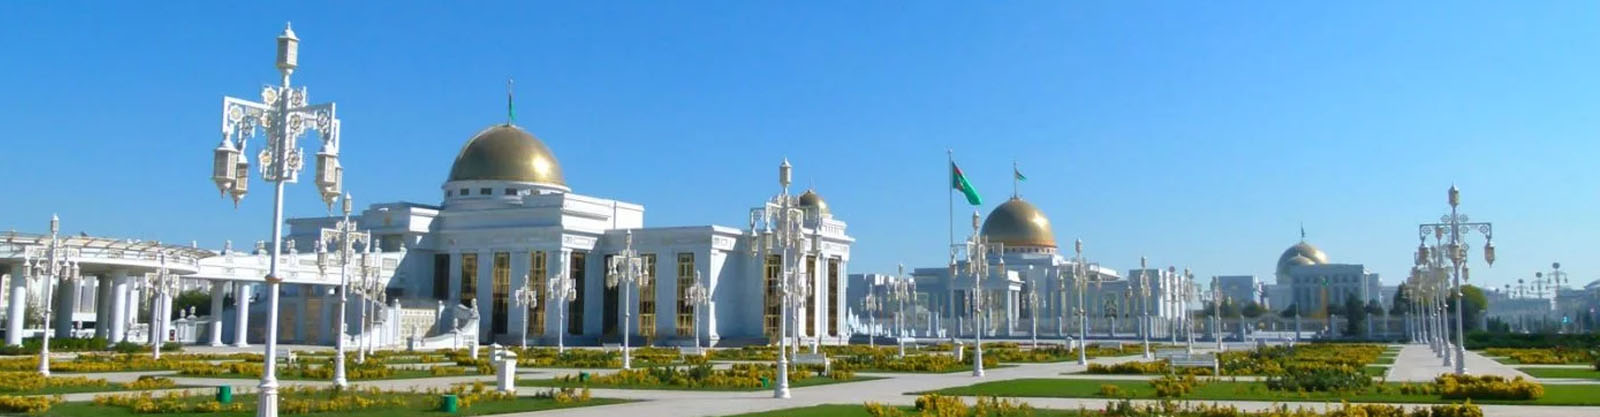 turkmenistan-combined-tour-banner